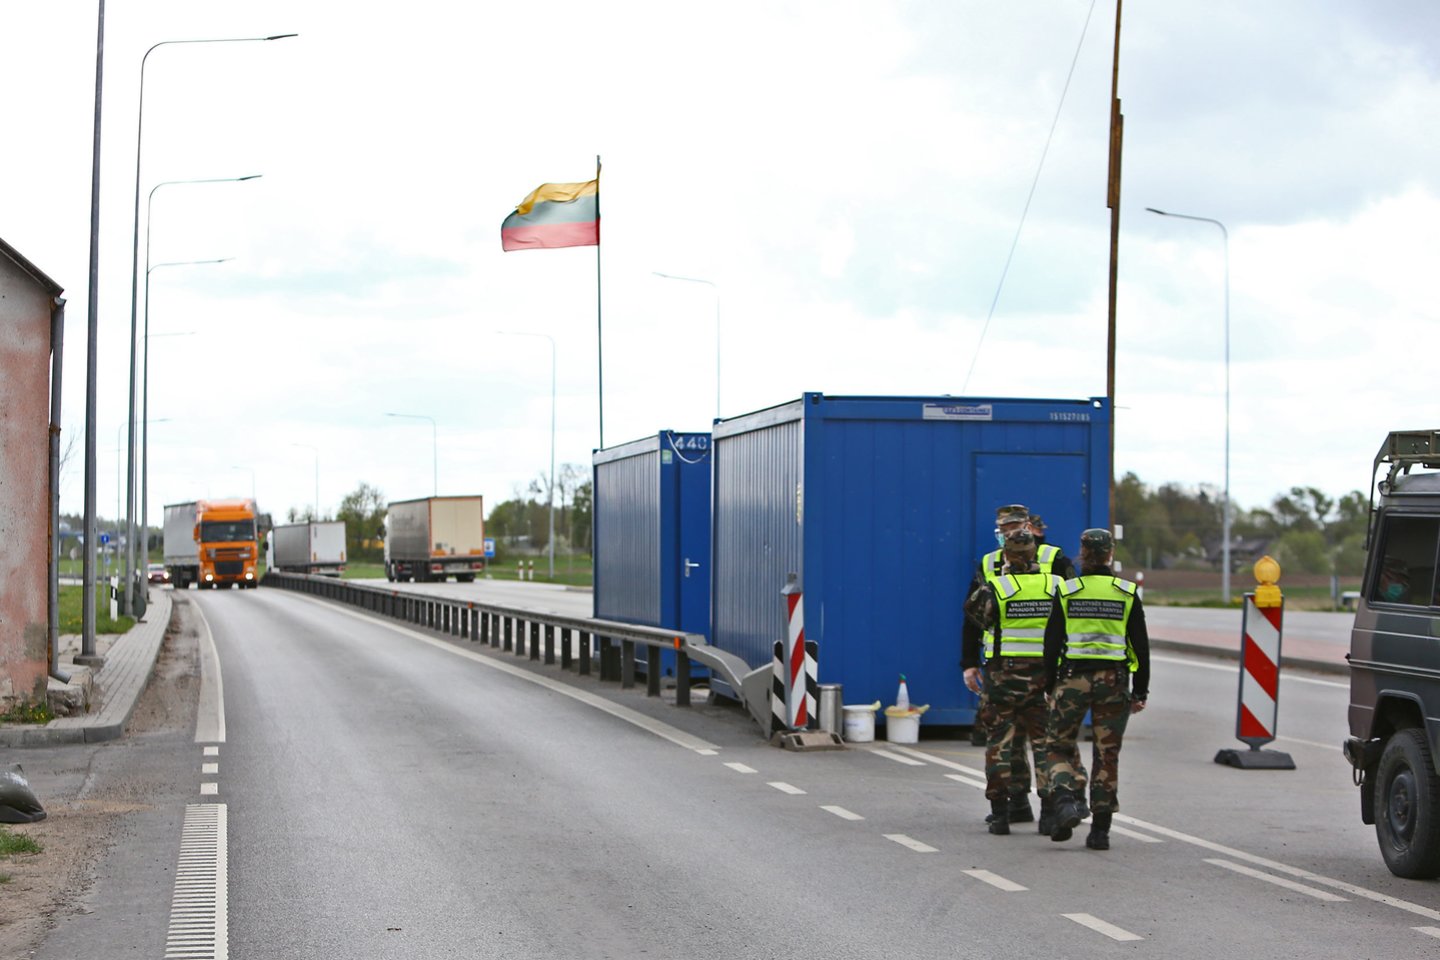  Penktadienį Lietuva atvėrė sieną su Latvija - Baltijos šalių erdvėje keliauti galima be apribojimų. <br> G.Šiupario nuotr.